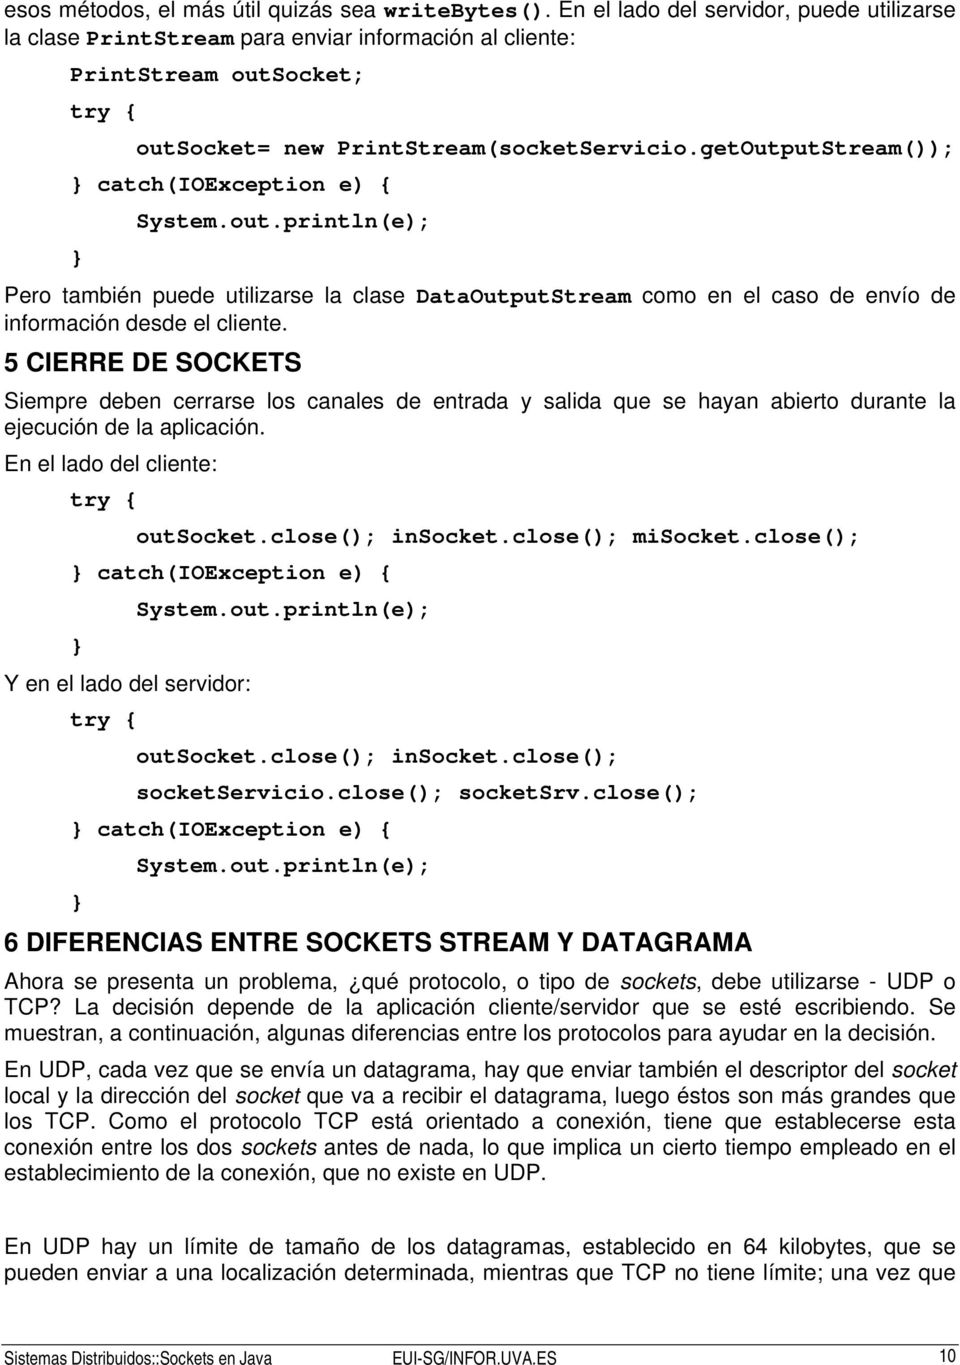 getOutputStream()); catch(ioexception e) { Pero también puede utilizarse la clase DataOutputStream como en el caso de envío de información desde el cliente.